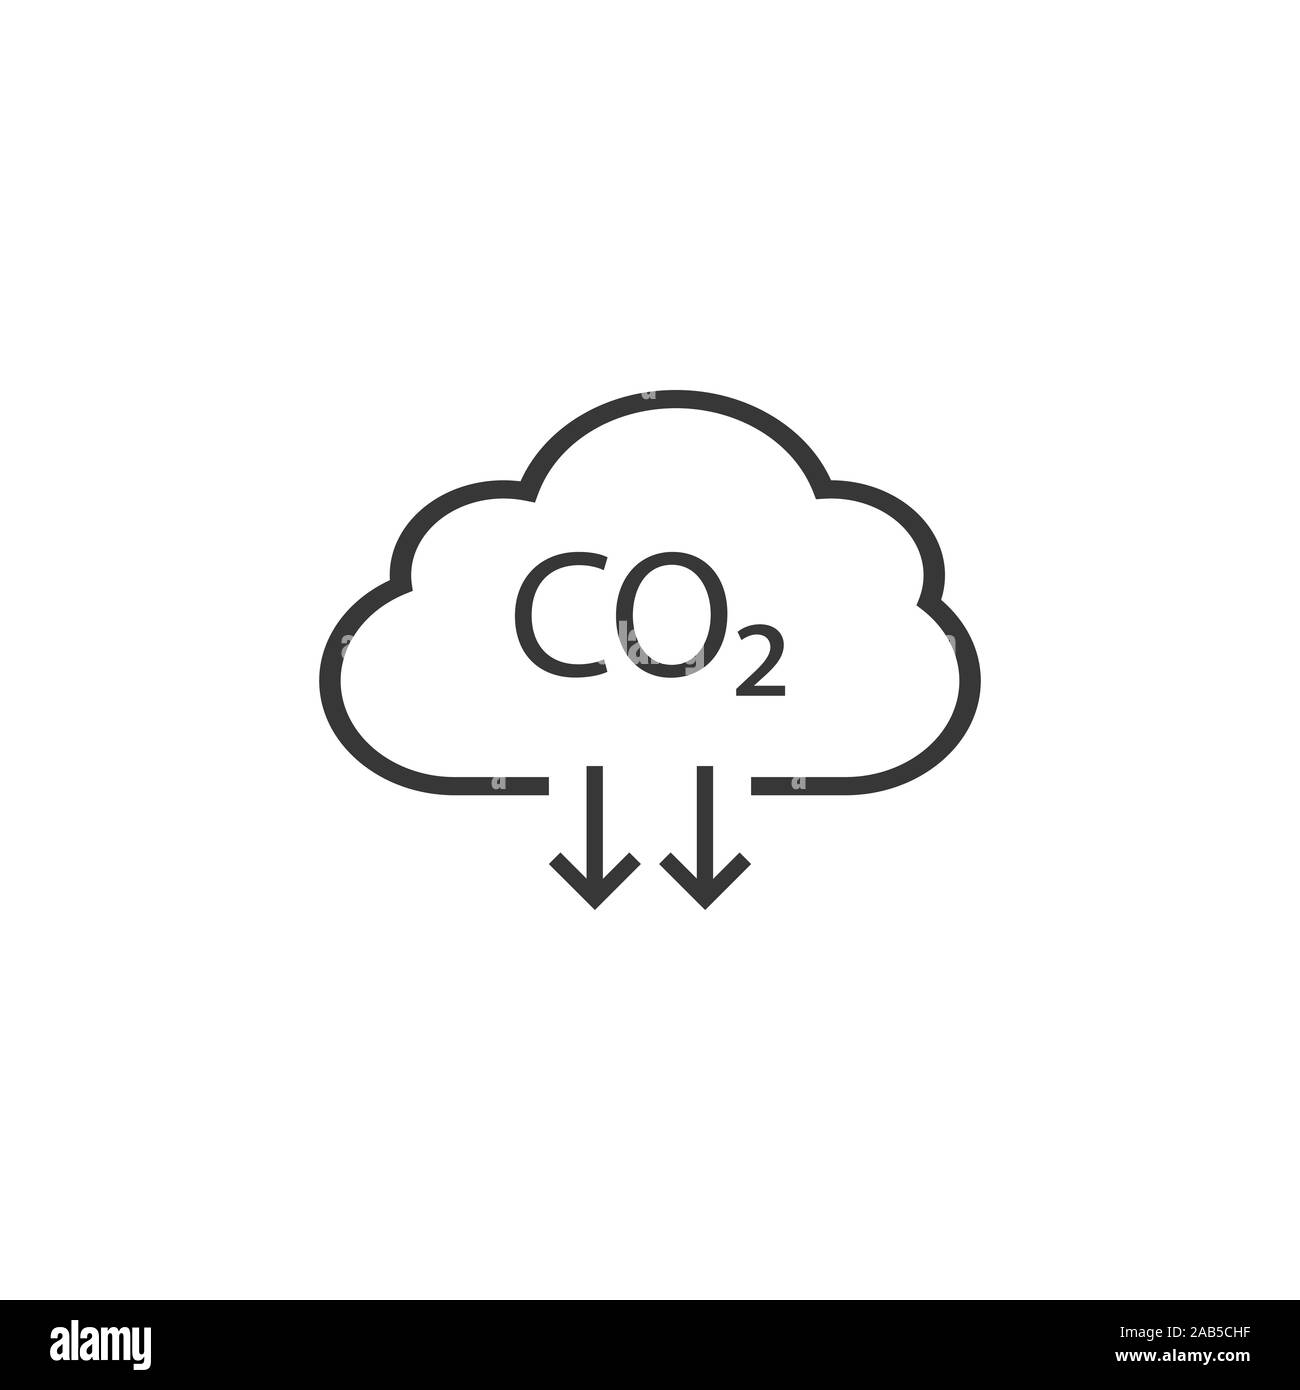 Co2, ecologia, icona della nuvola. Illustrazione Vettoriale, design piatto. Illustrazione Vettoriale